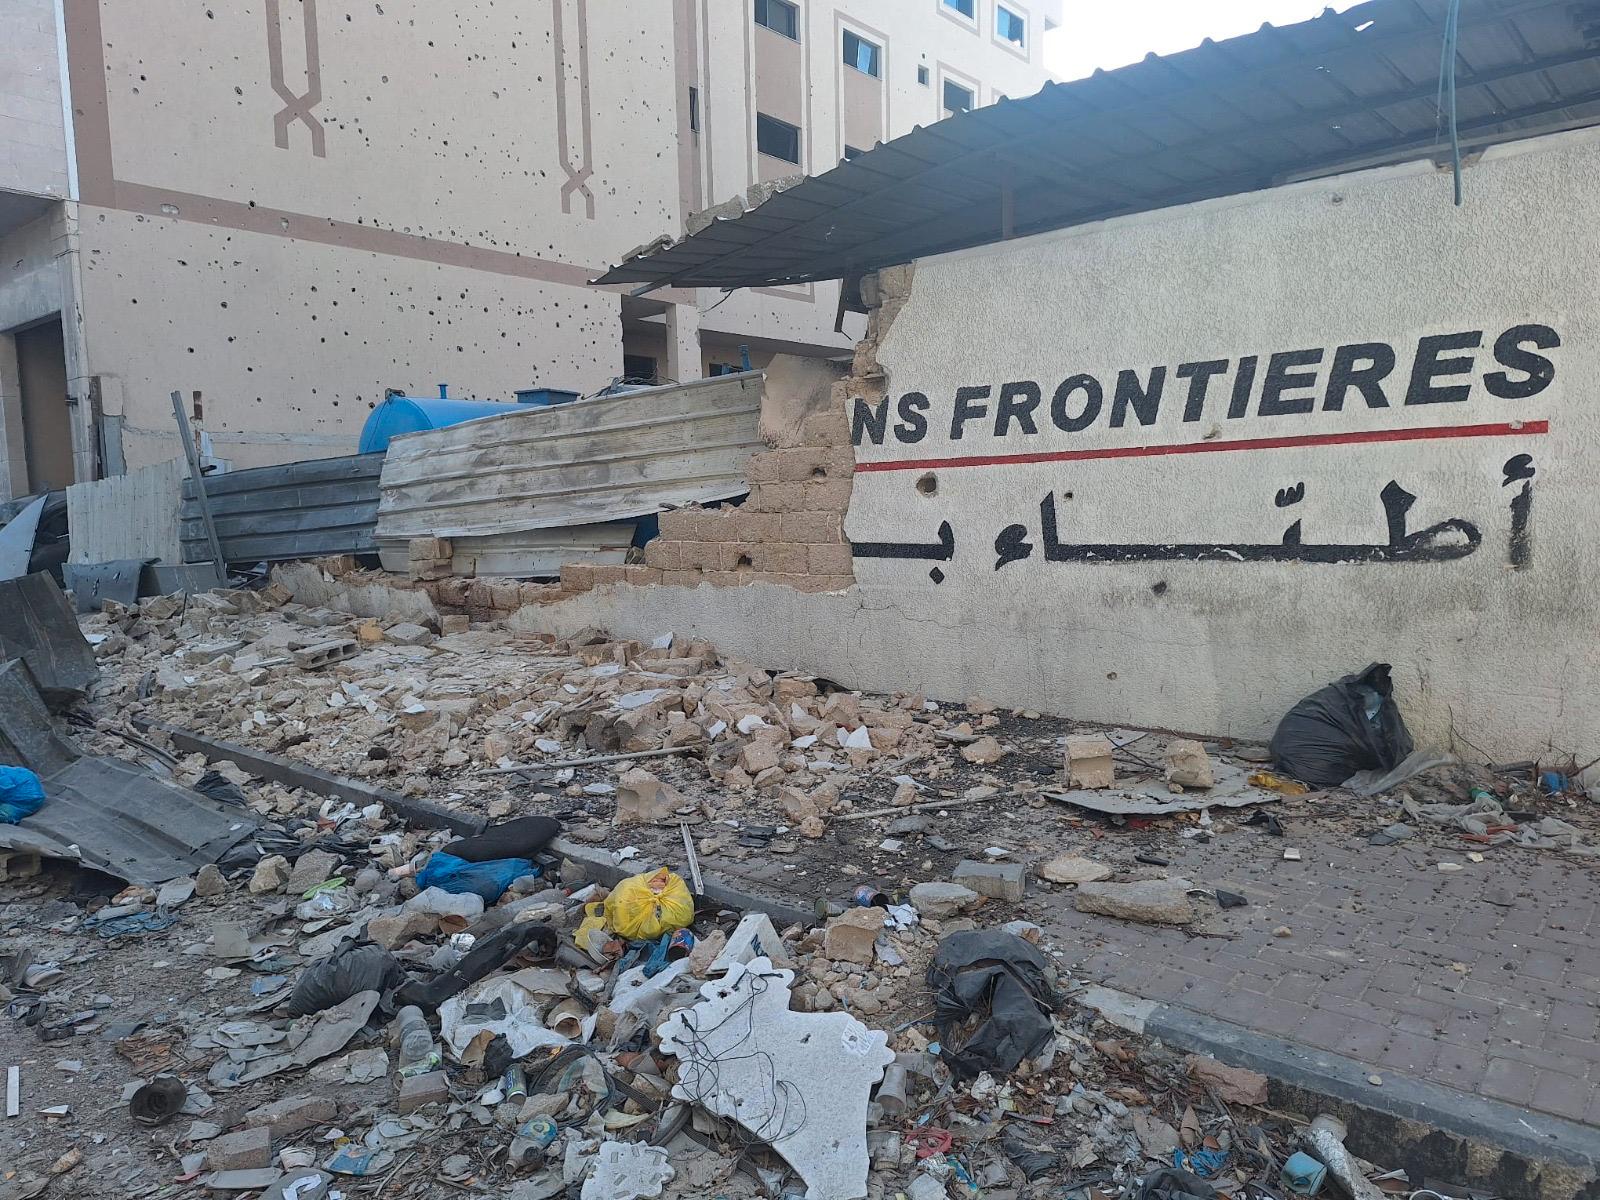 Även Läkare utan gränsers byggnad nära al-Shifasjukhuset attackerades under räden. ”De förstörde kontoret, kliniken, alla bilar och generatorer”, säger en ur personalen i ett pressmeddelande.